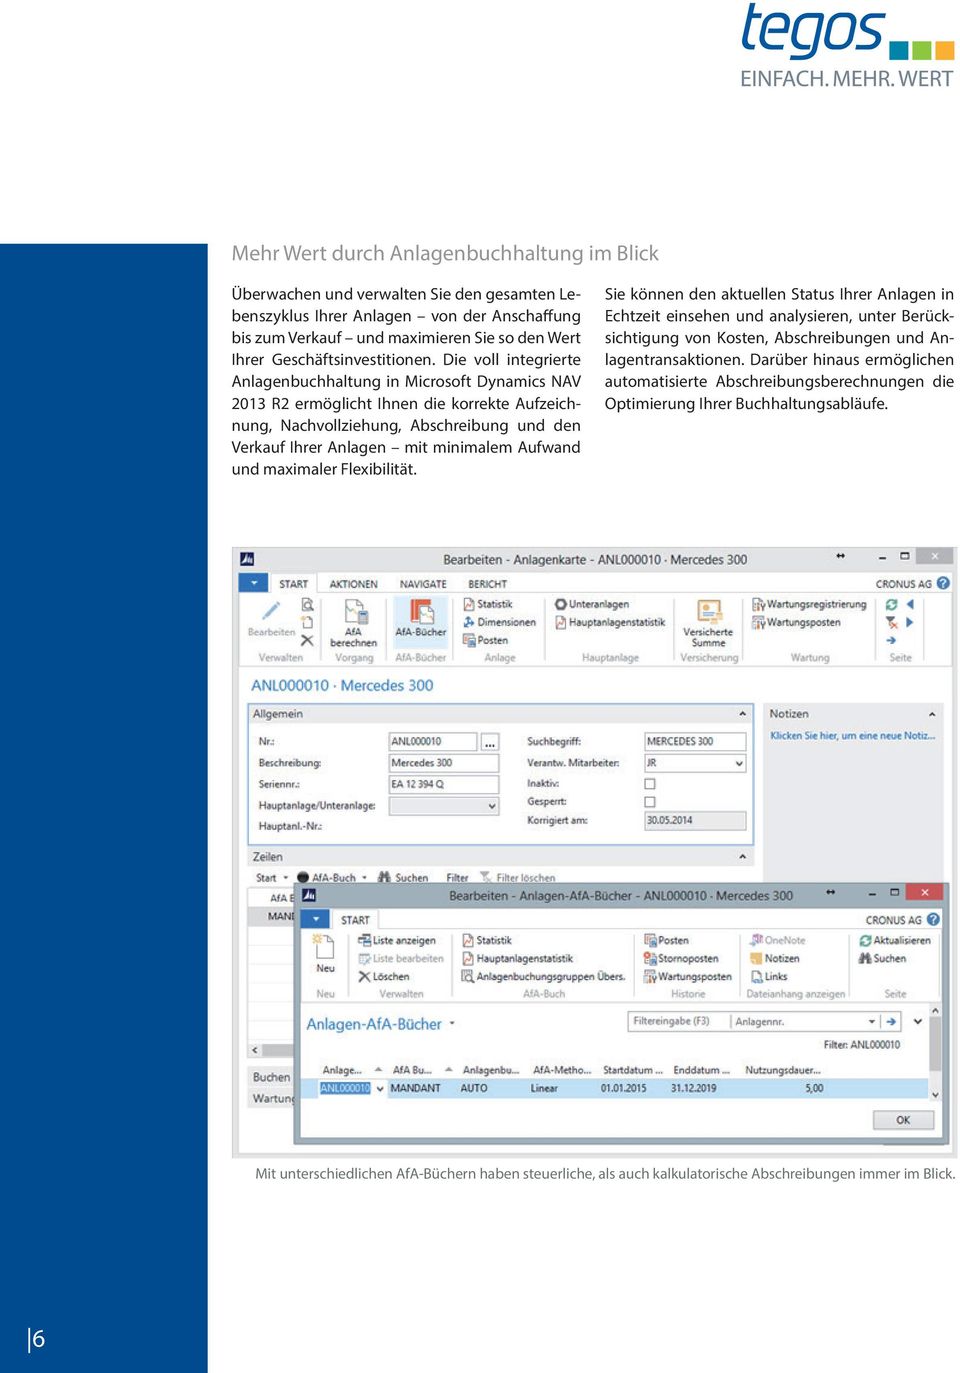 Die voll integrierte Anlagenbuchhaltung in Microsoft Dynamics NAV 2013 R2 ermöglicht Ihnen die korrekte Aufzeichnung, Nachvollziehung, Abschreibung und den Verkauf Ihrer Anlagen mit minimalem Aufwand